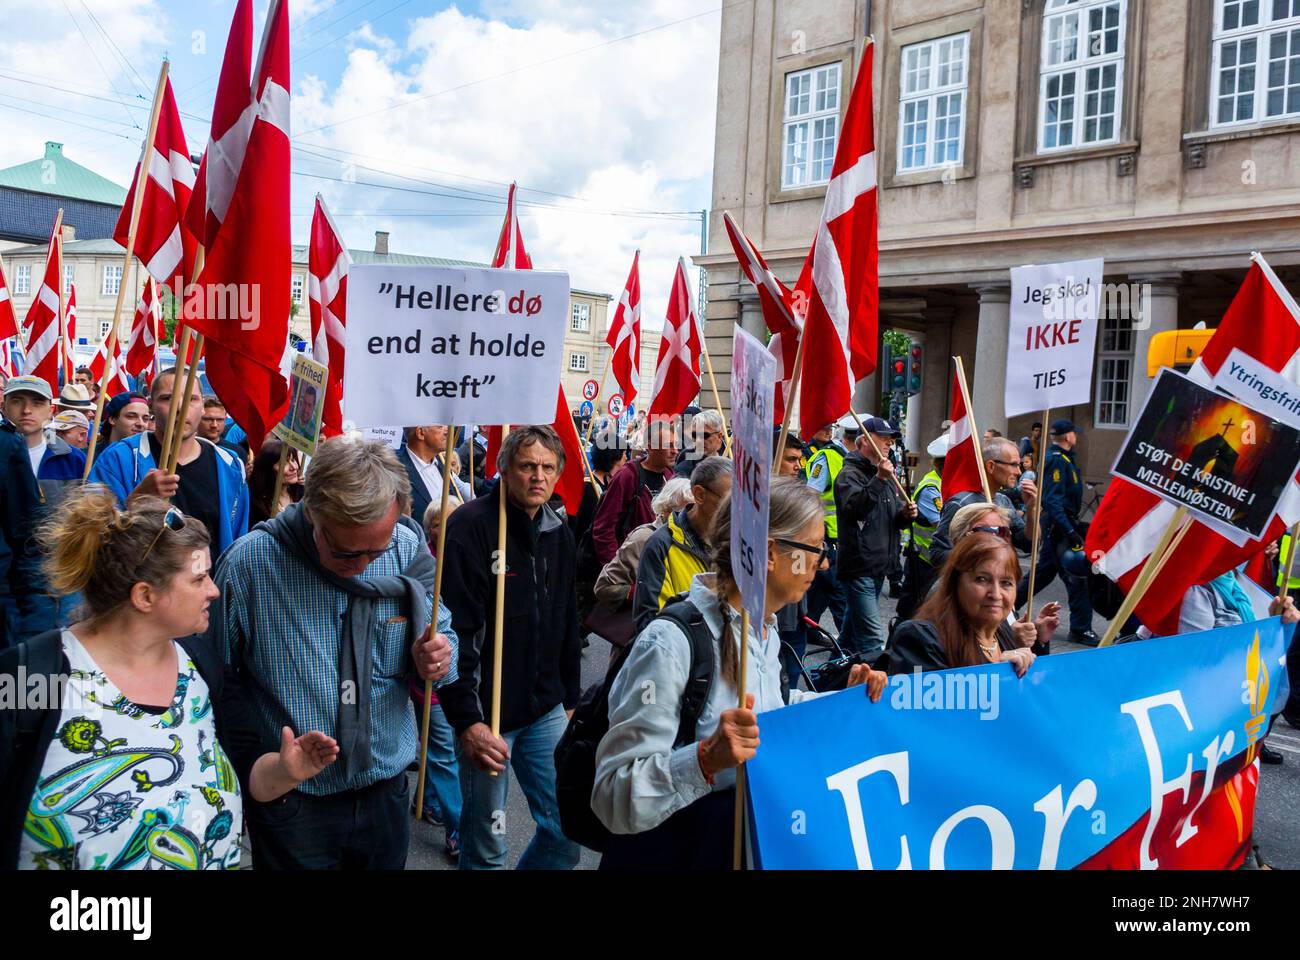 Kopenhagen, Dänemark, Menschenmenge, demonstriert für die politische Partei der extremen Rechten, Anti-Immigration, auf der Straße, mit Flaggen Stockfoto